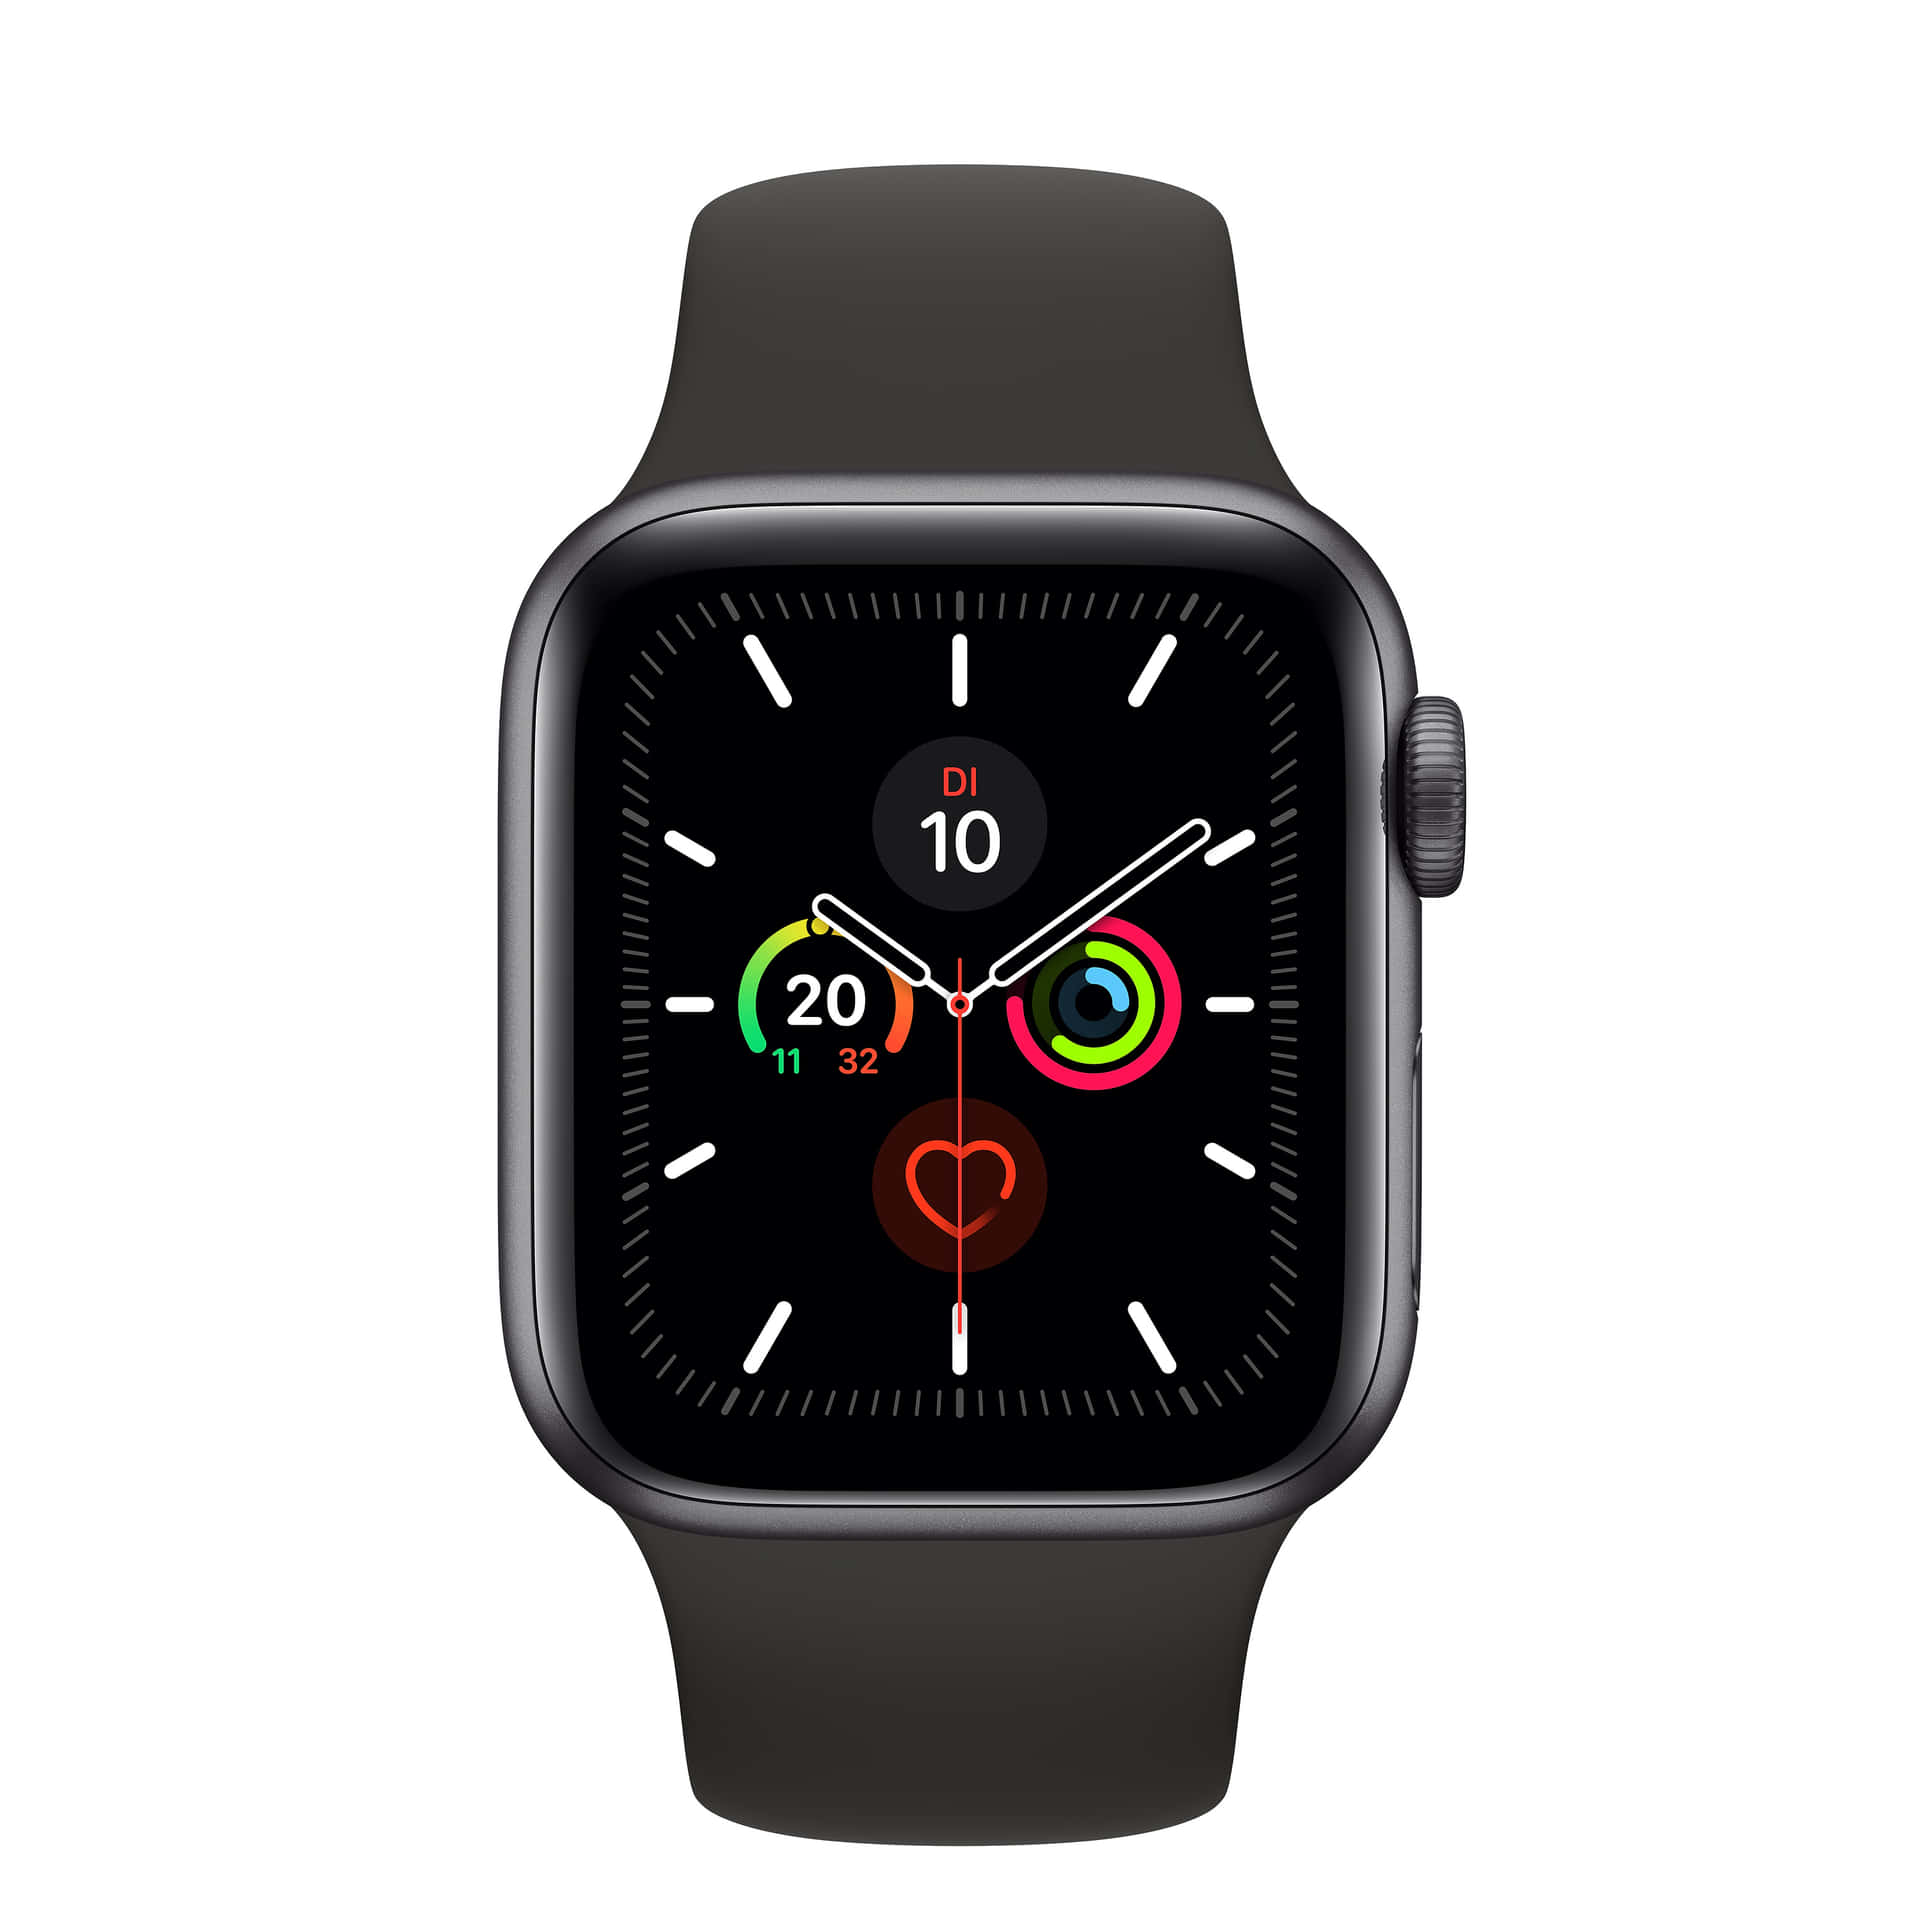 Apple Watch Series 5 - Black